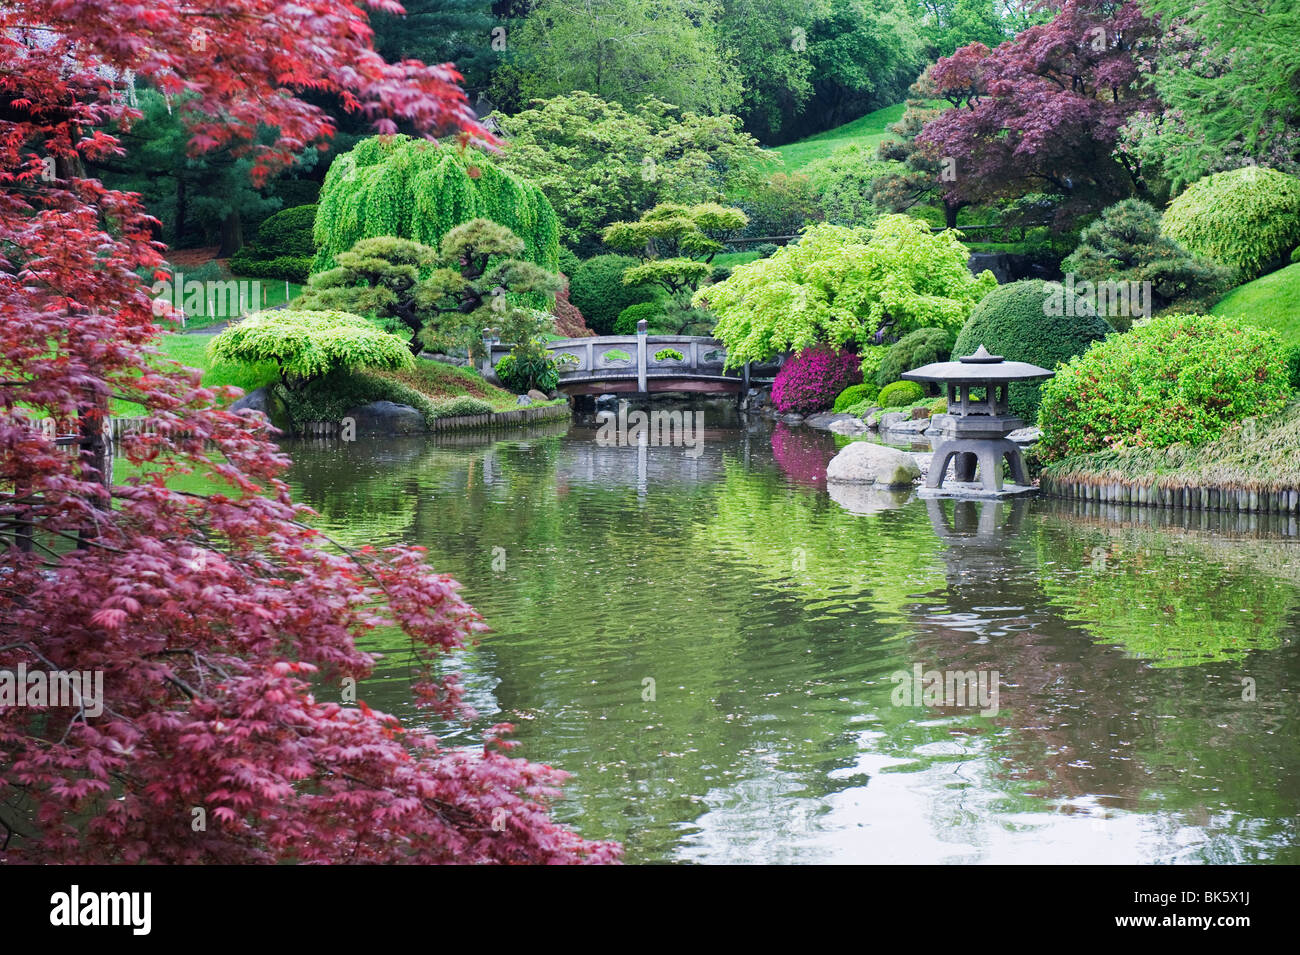 Jardin japonais, le Jardin botanique de Brooklyn, Brooklyn, New York City, New York, États-Unis d'Amérique, Amérique du Nord Banque D'Images